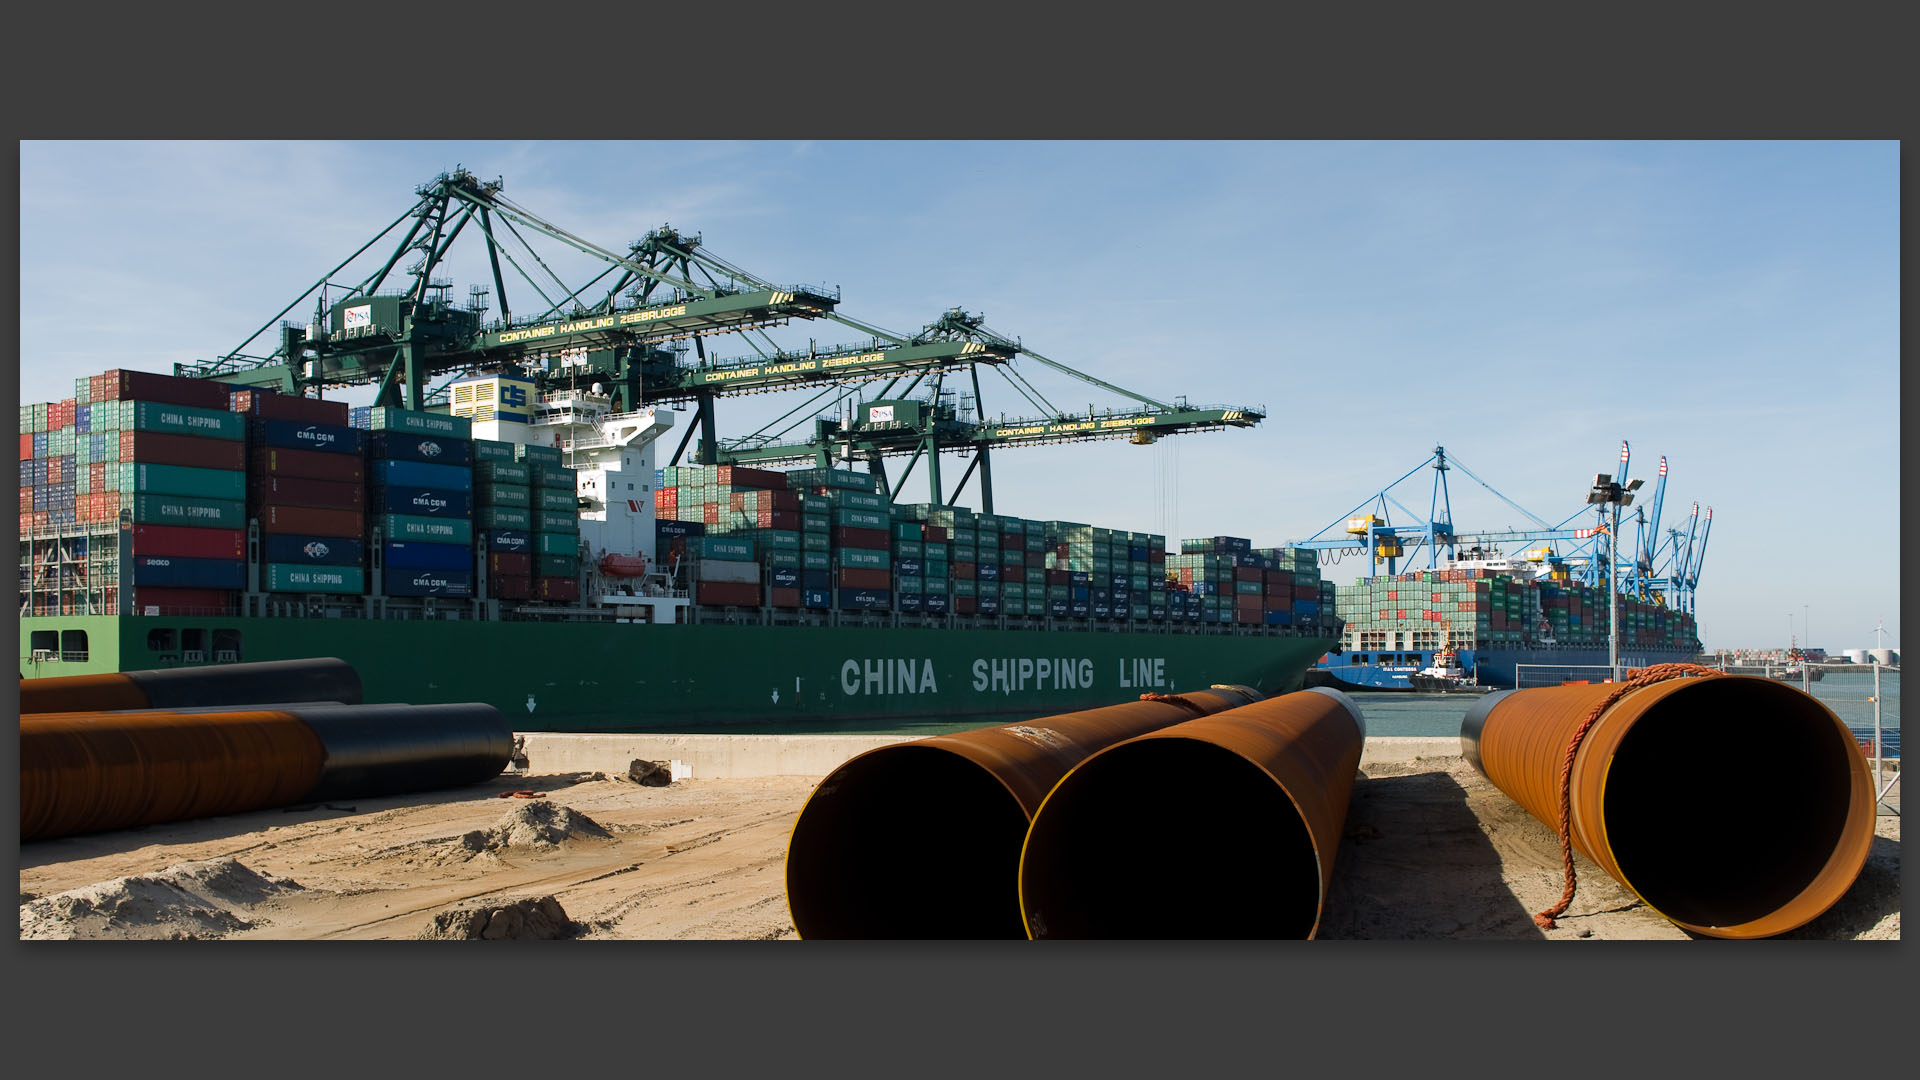 Porte-conteneur de la China shipping line, dans le port de Zeebrugge, en Belgique.